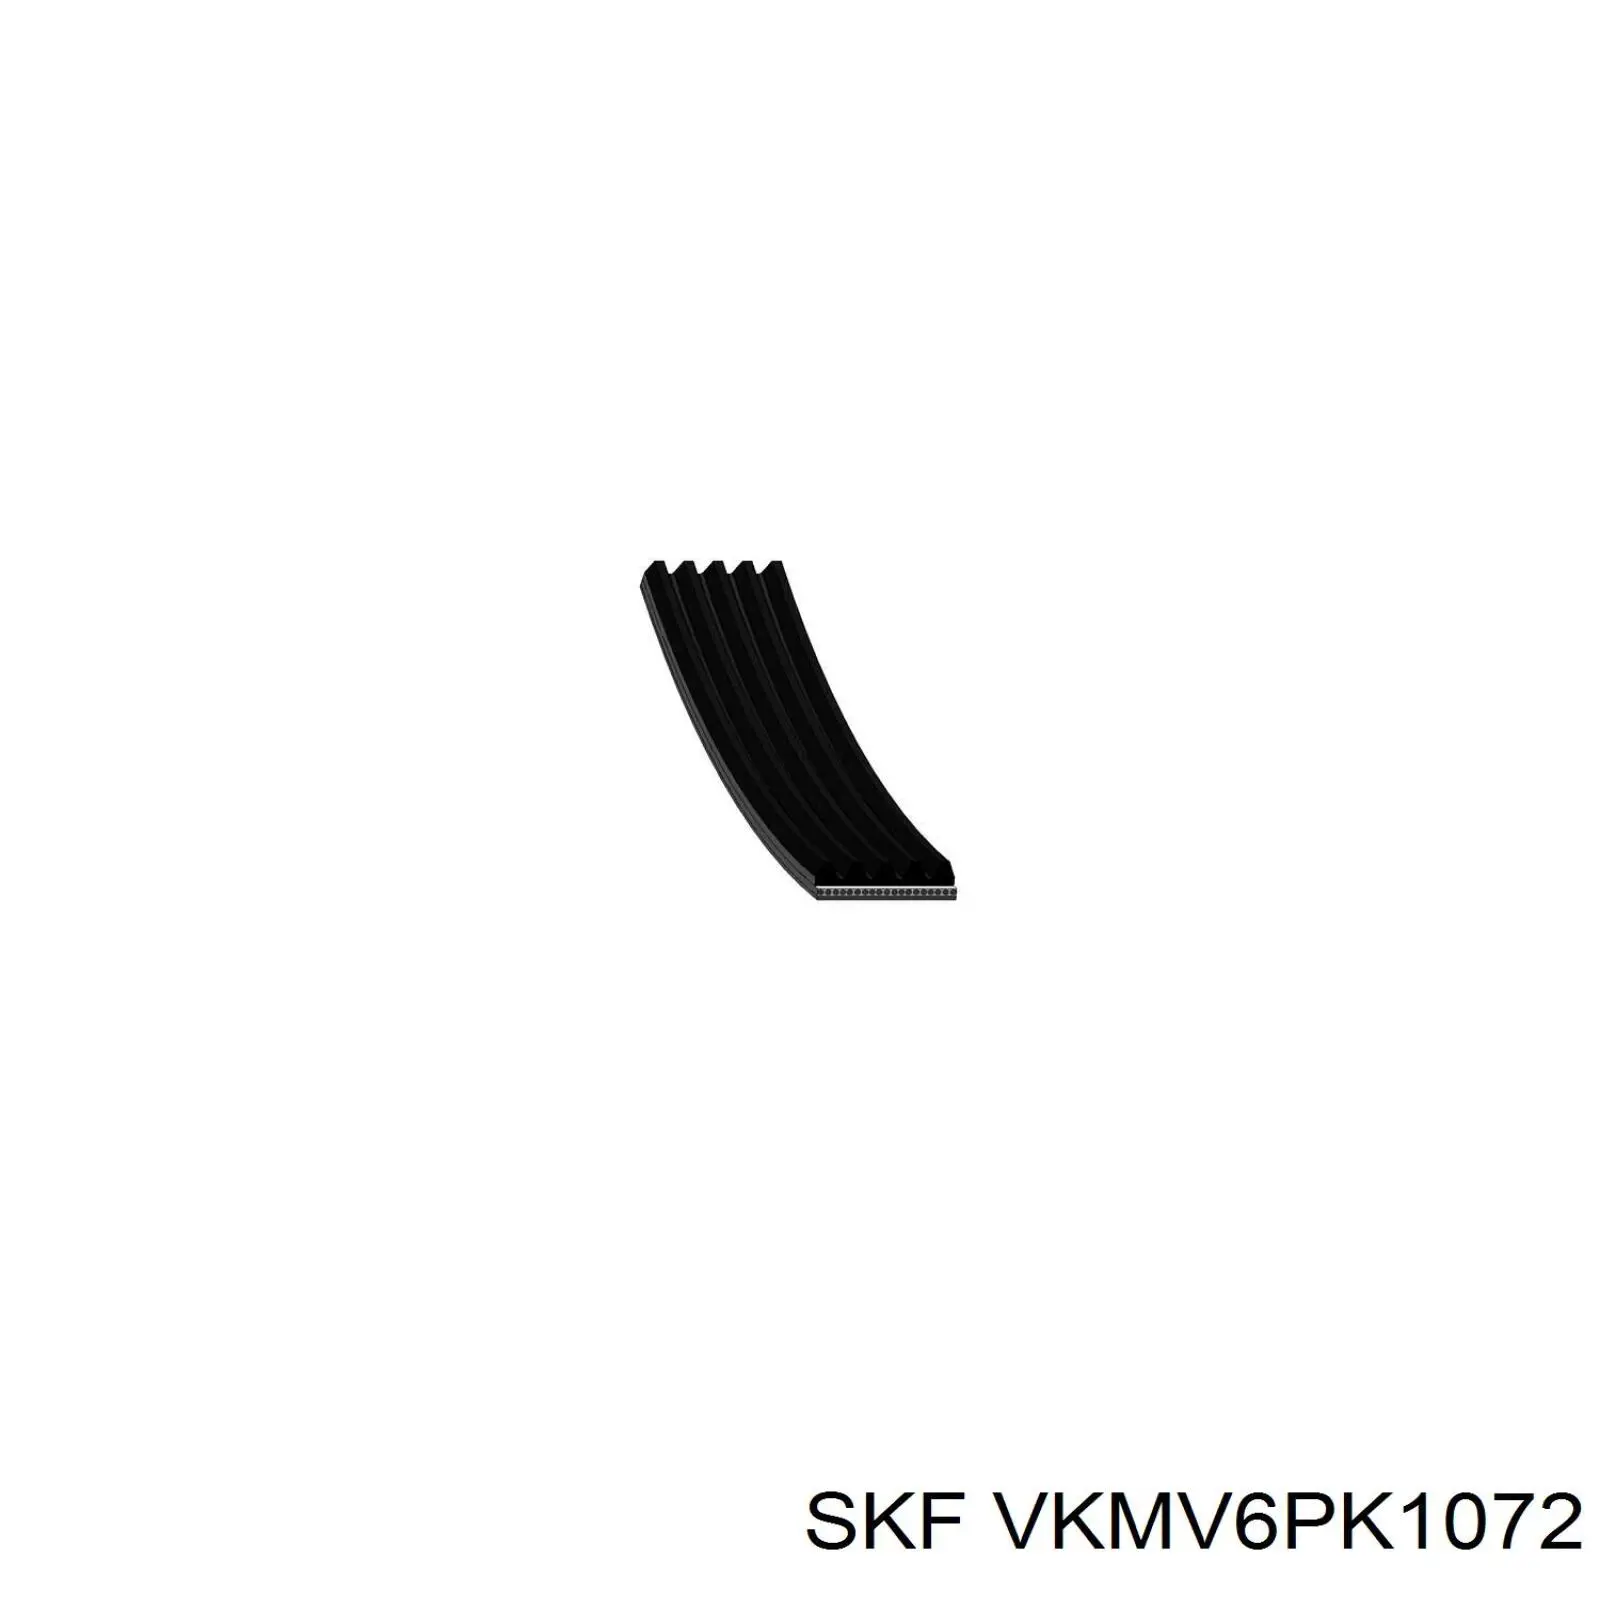 VKMV6PK1072 SKF correa trapezoidal